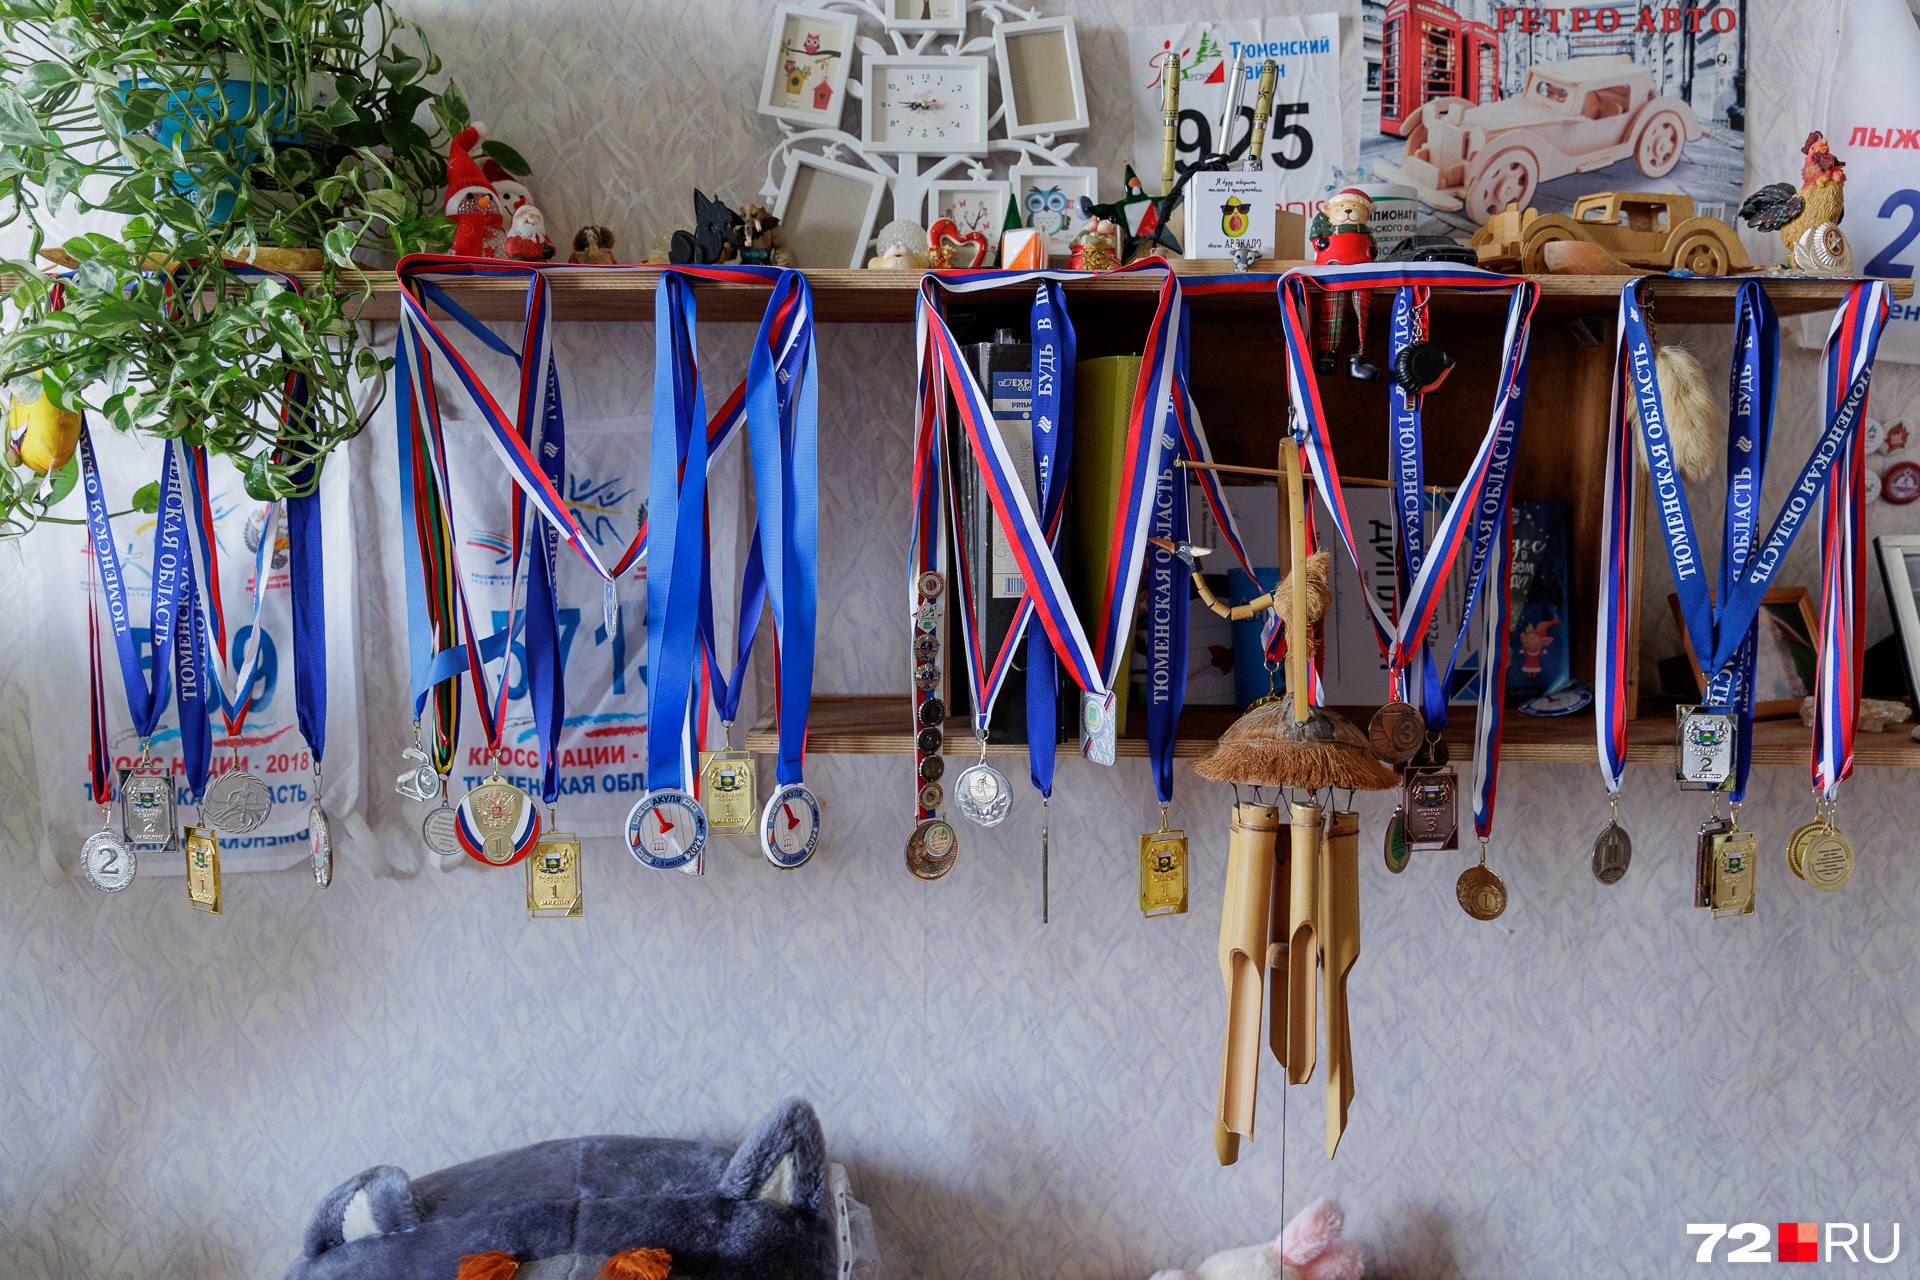 В комнате сына Сергея десятки медалей — ребенок занимается биатлоном, как и когда-то папа. Мужчина с гордостью рассказывает о своем сыне